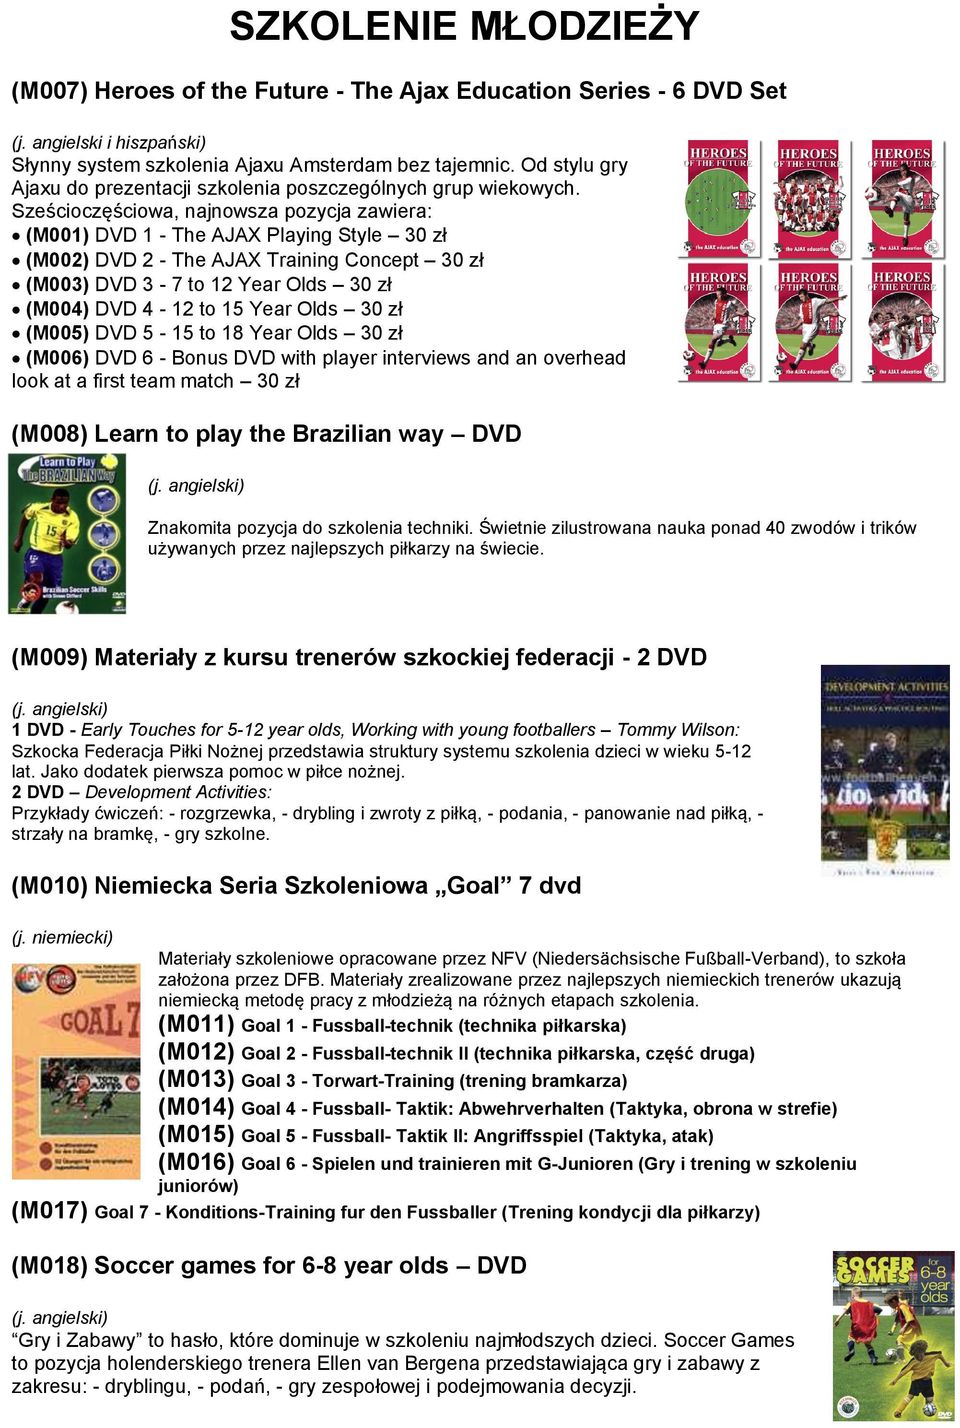 Sześcioczęściowa, najnowsza pozycja zawiera: (M001) DVD 1 - The AJAX Playing Style 30 zł (M002) DVD 2 - The AJAX Training Concept 30 zł (M003) DVD 3-7 to 12 Year Olds 30 zł (M004) DVD 4-12 to 15 Year